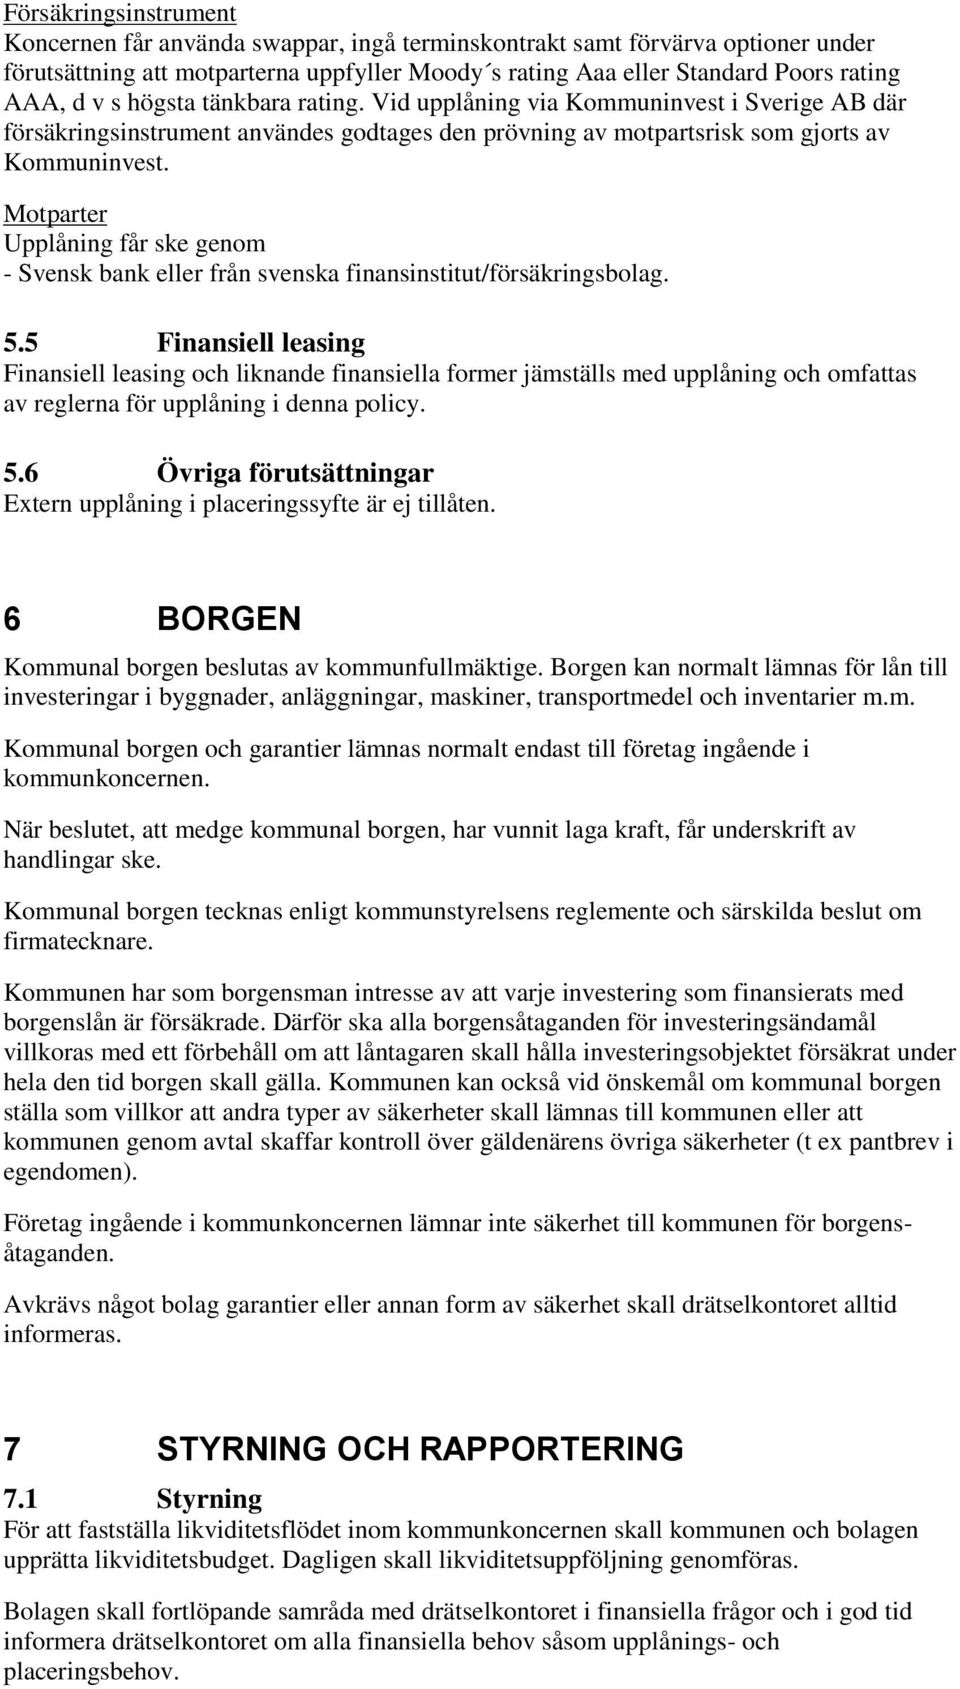 Mtparter Upplåning får ske genm - Svensk bank eller från svenska finansinstitut/försäkringsblag. 5.